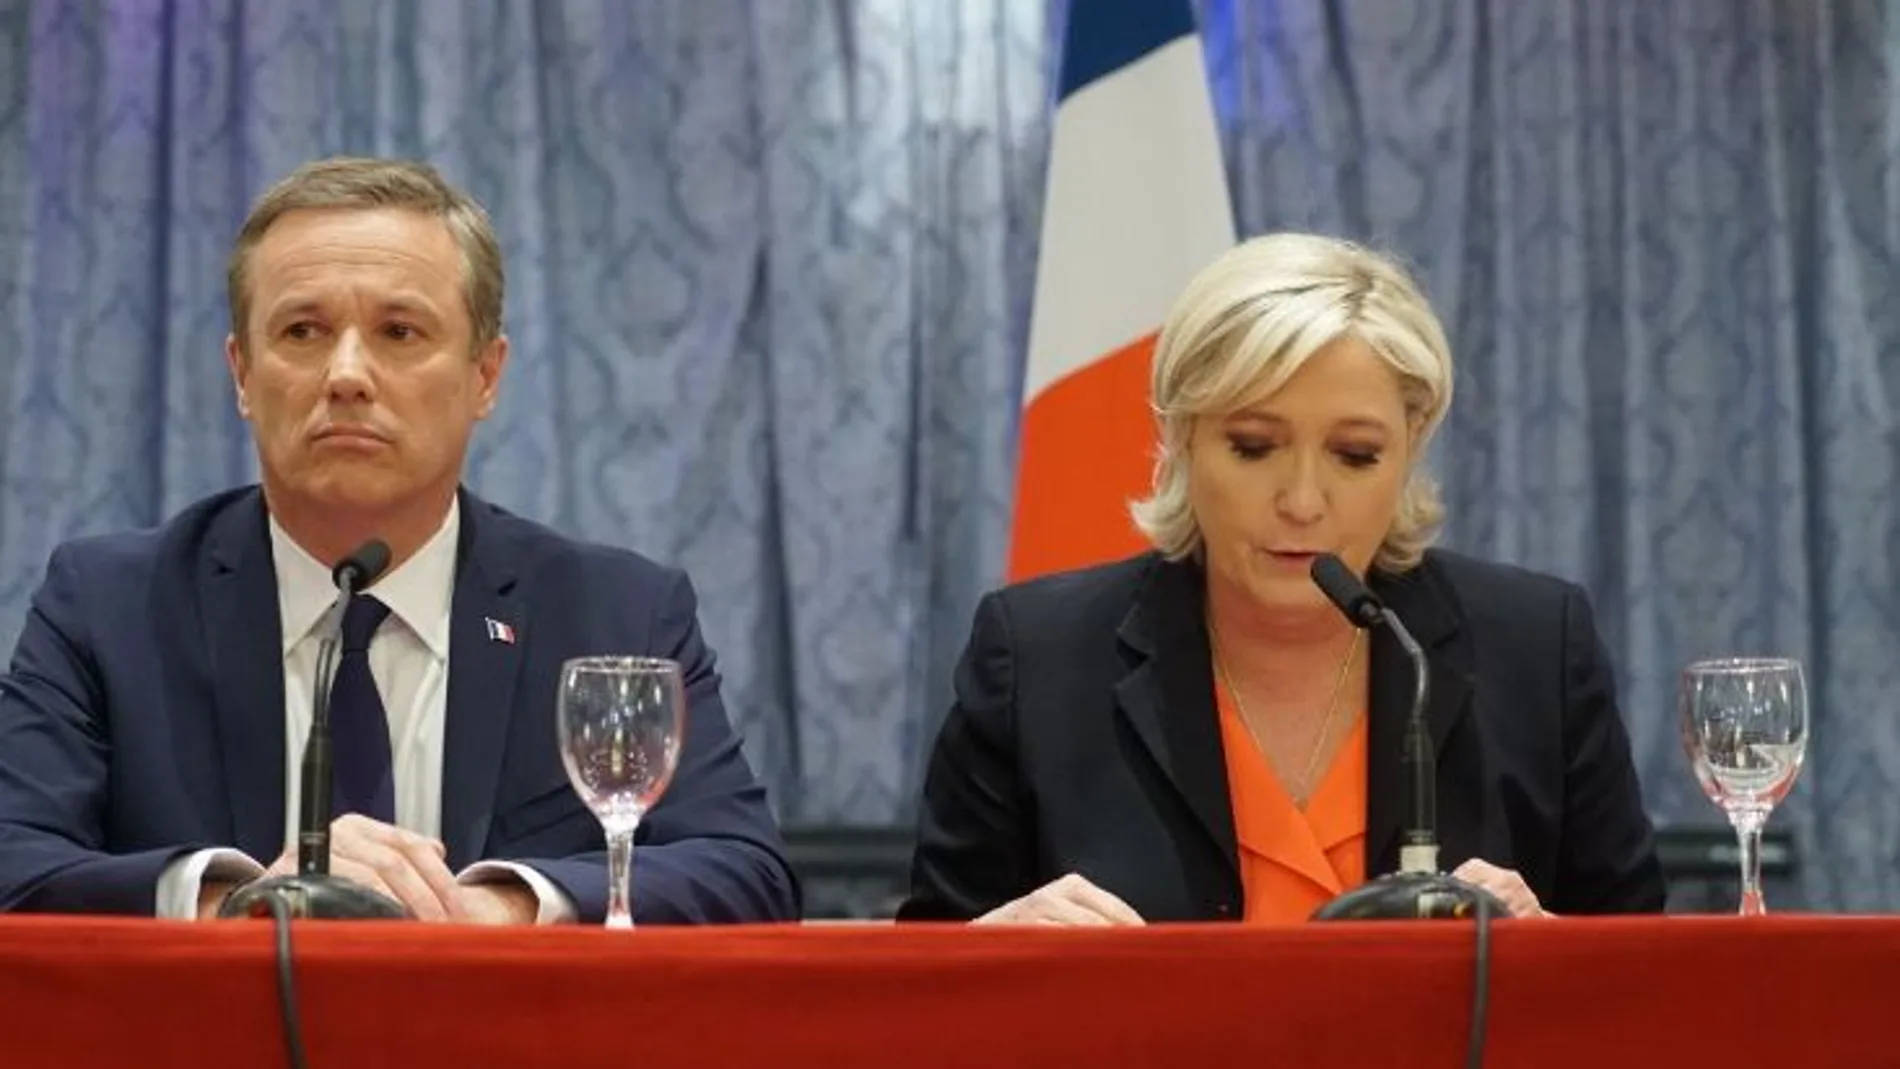 Conferencia de prensa conjunta de Le Pen y Dupont